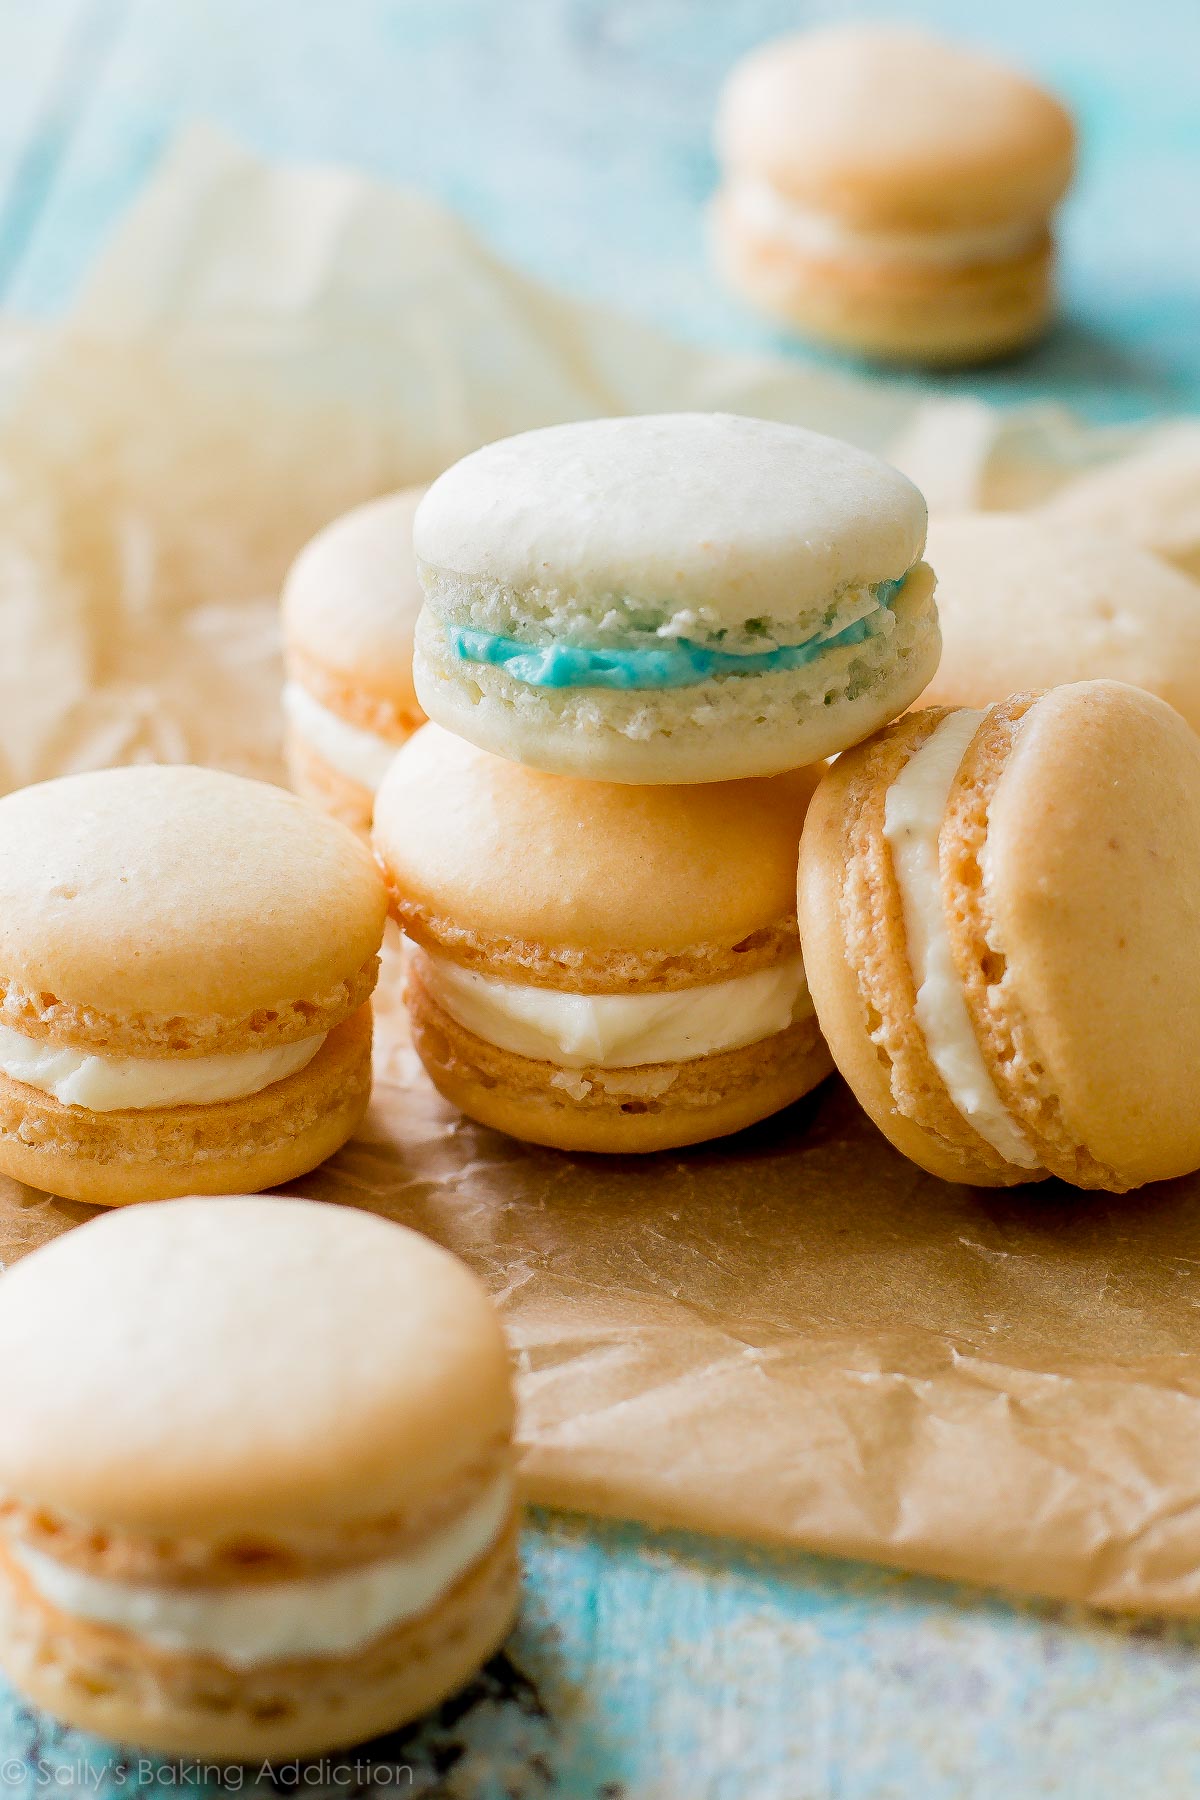 Tutoriel soigneusement expliqué et photographié pour les délicats biscuits au macaron français! Recette sur sallysbakingaddiction.com